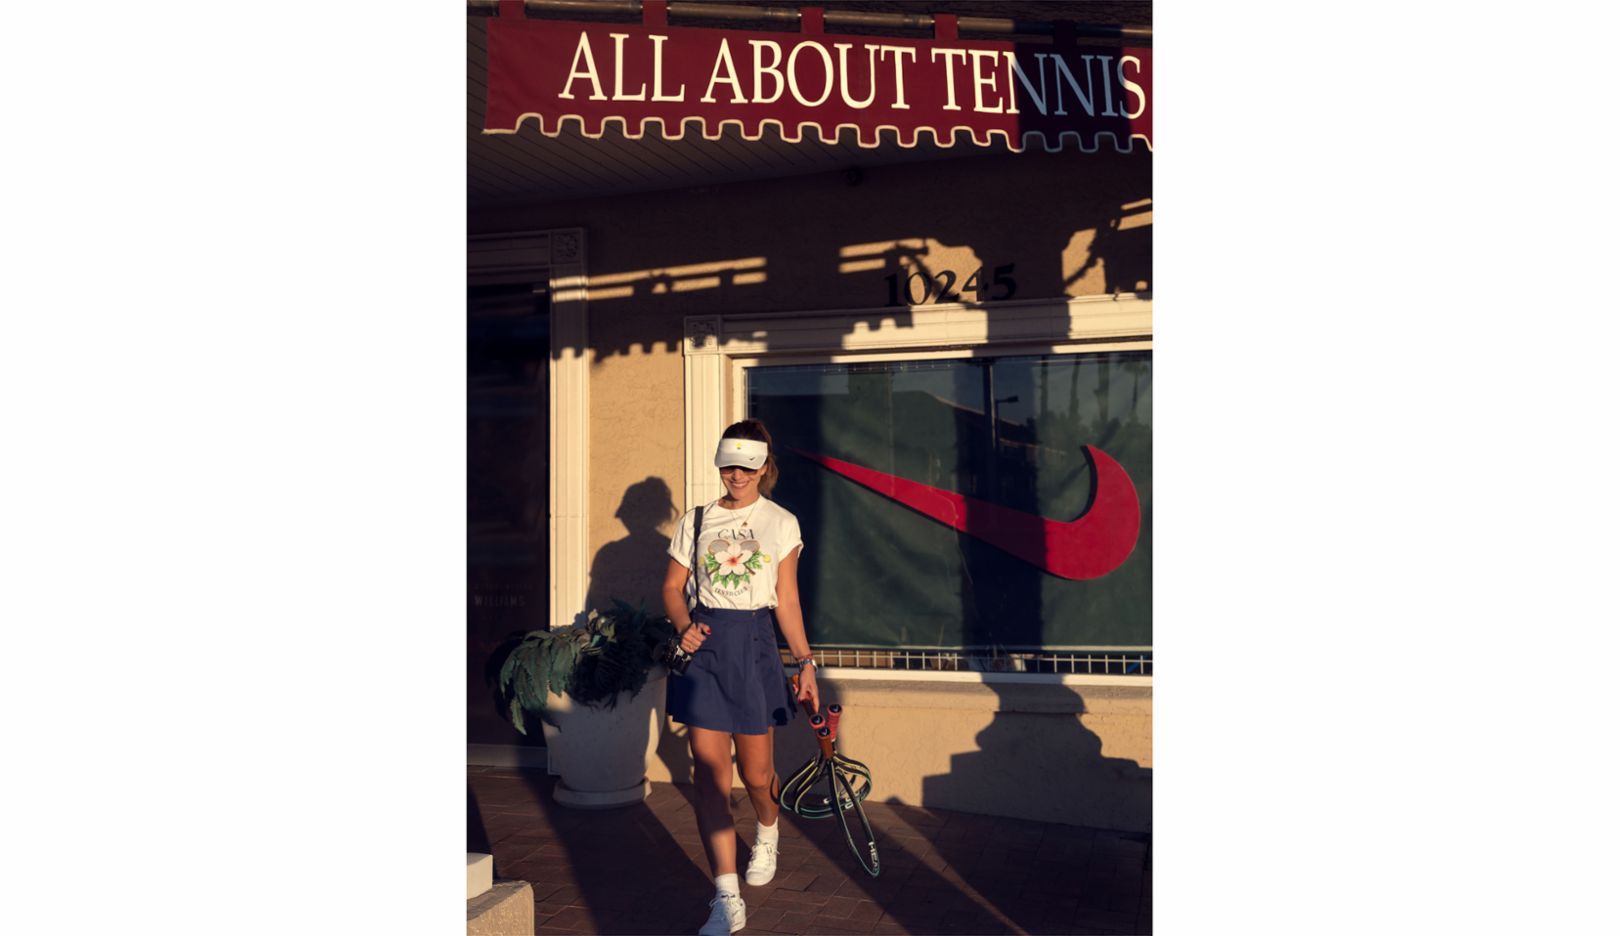 Radka Leitmeritz davanti al suo negozio di tennis preferito a Scottsdale, Arizona. «Adoro curiosare in questo negozio. Per esempio, quando le racchette vengono incordate.» I suoi outfit, preferibilmente vintage, arrivano soprattutto da Internet. La fotografa trova che negli anni Ottanta e Novanta le giocatrici riuscissero a esprimere meglio la loro unicità nel loro abbigliamento, ragion per cui colleziona gonnellini di quei periodi. 